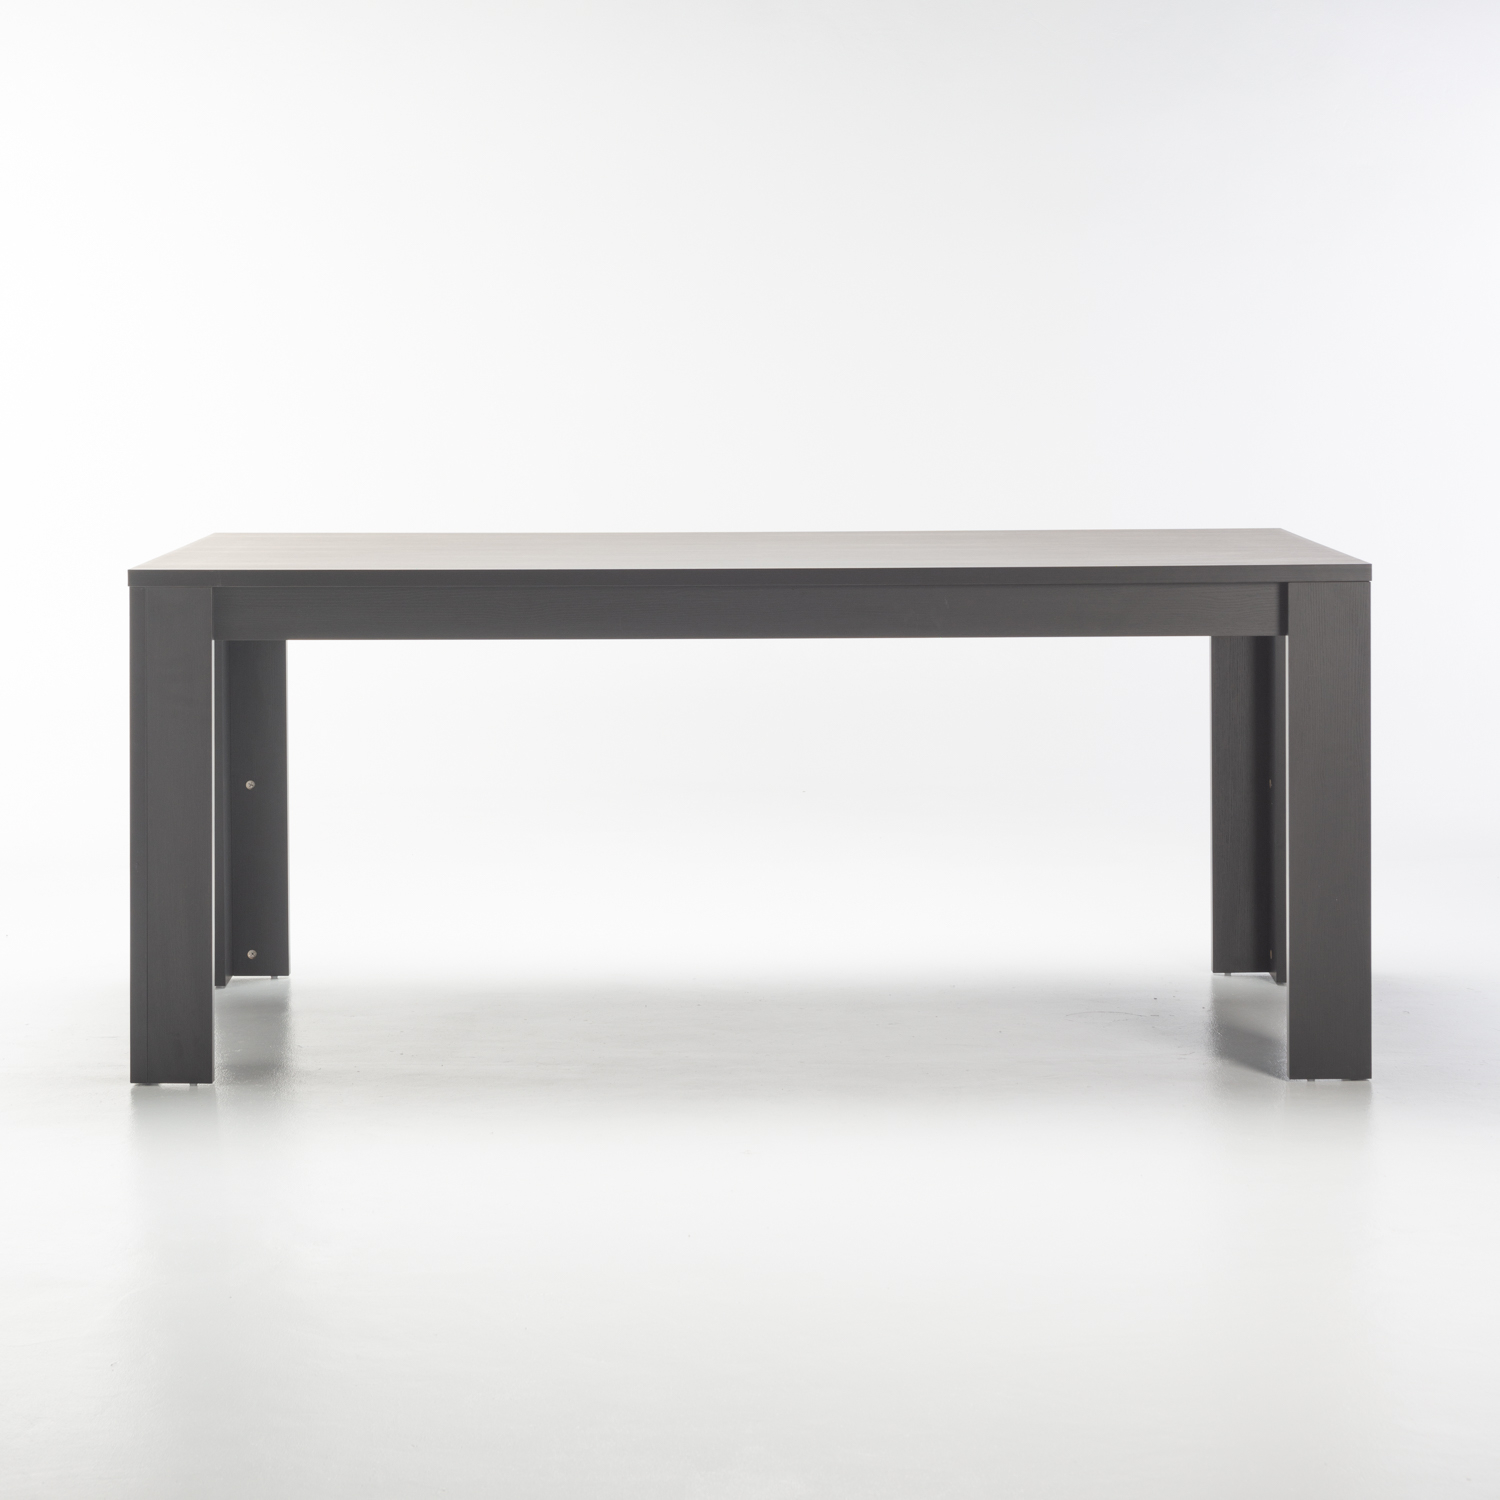 Decofurn Furniture Forli 180x90cm Dining Table pertaining to sizing 1500 X 1500